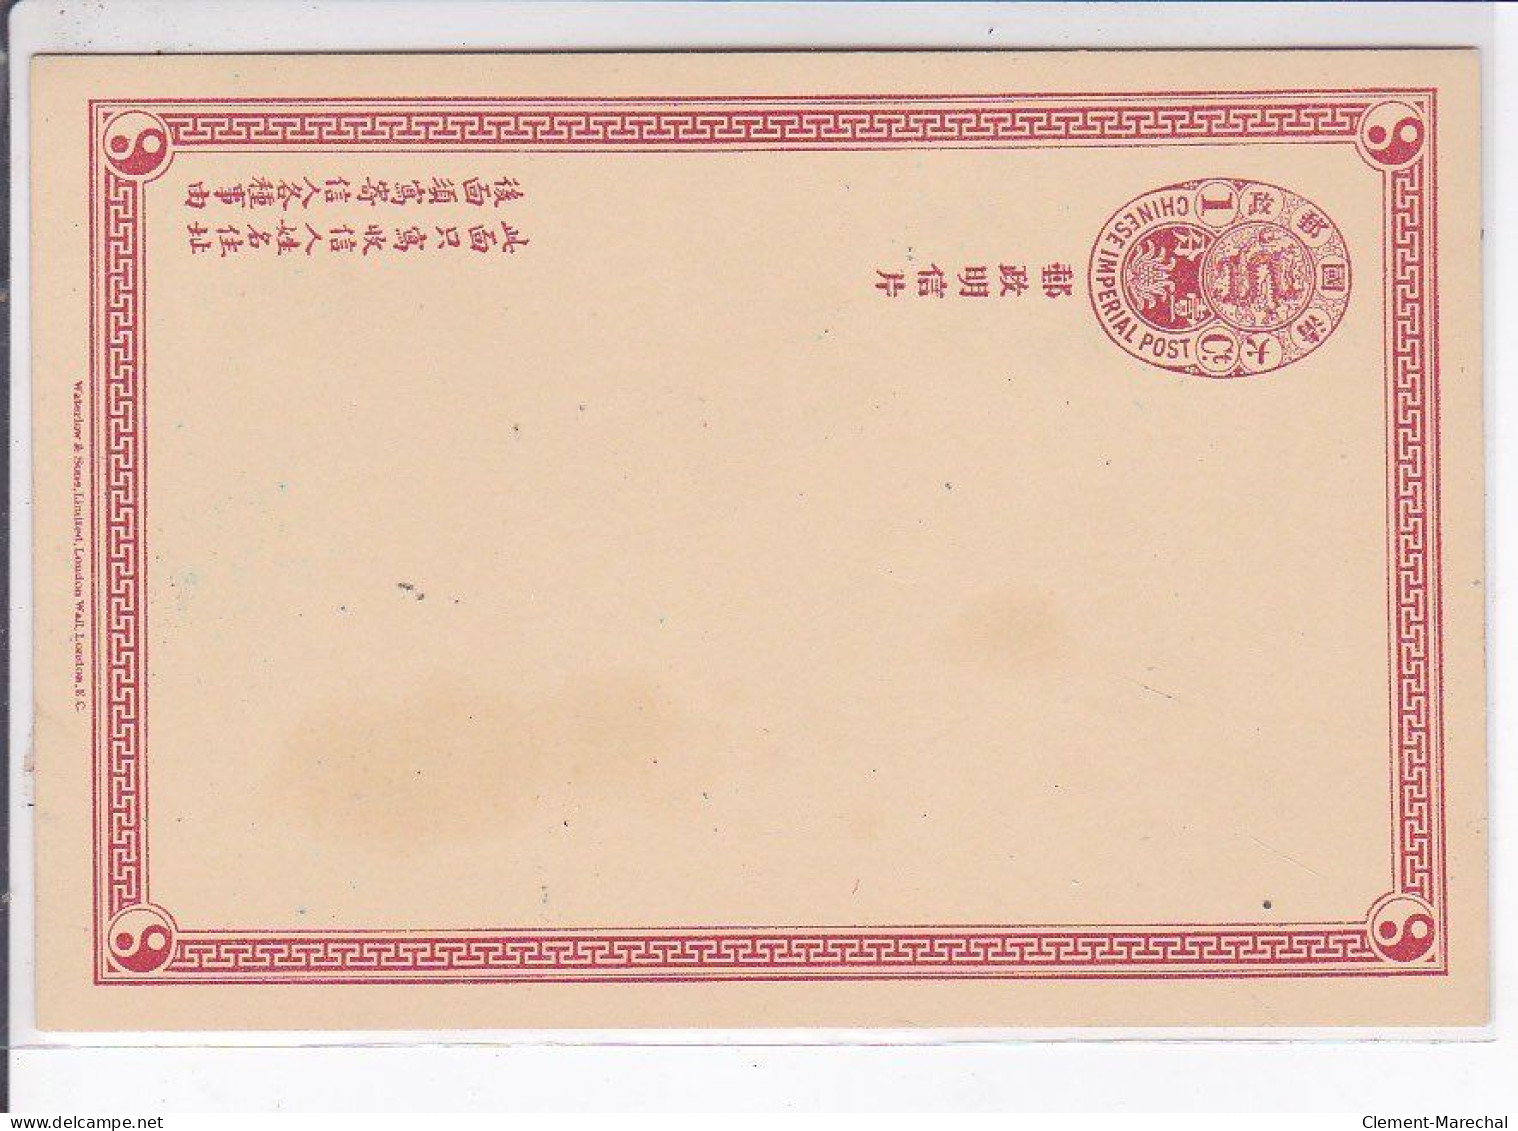 CHINE : série de 10 cartes postales avec entier postal (postal stationary) - très bon état